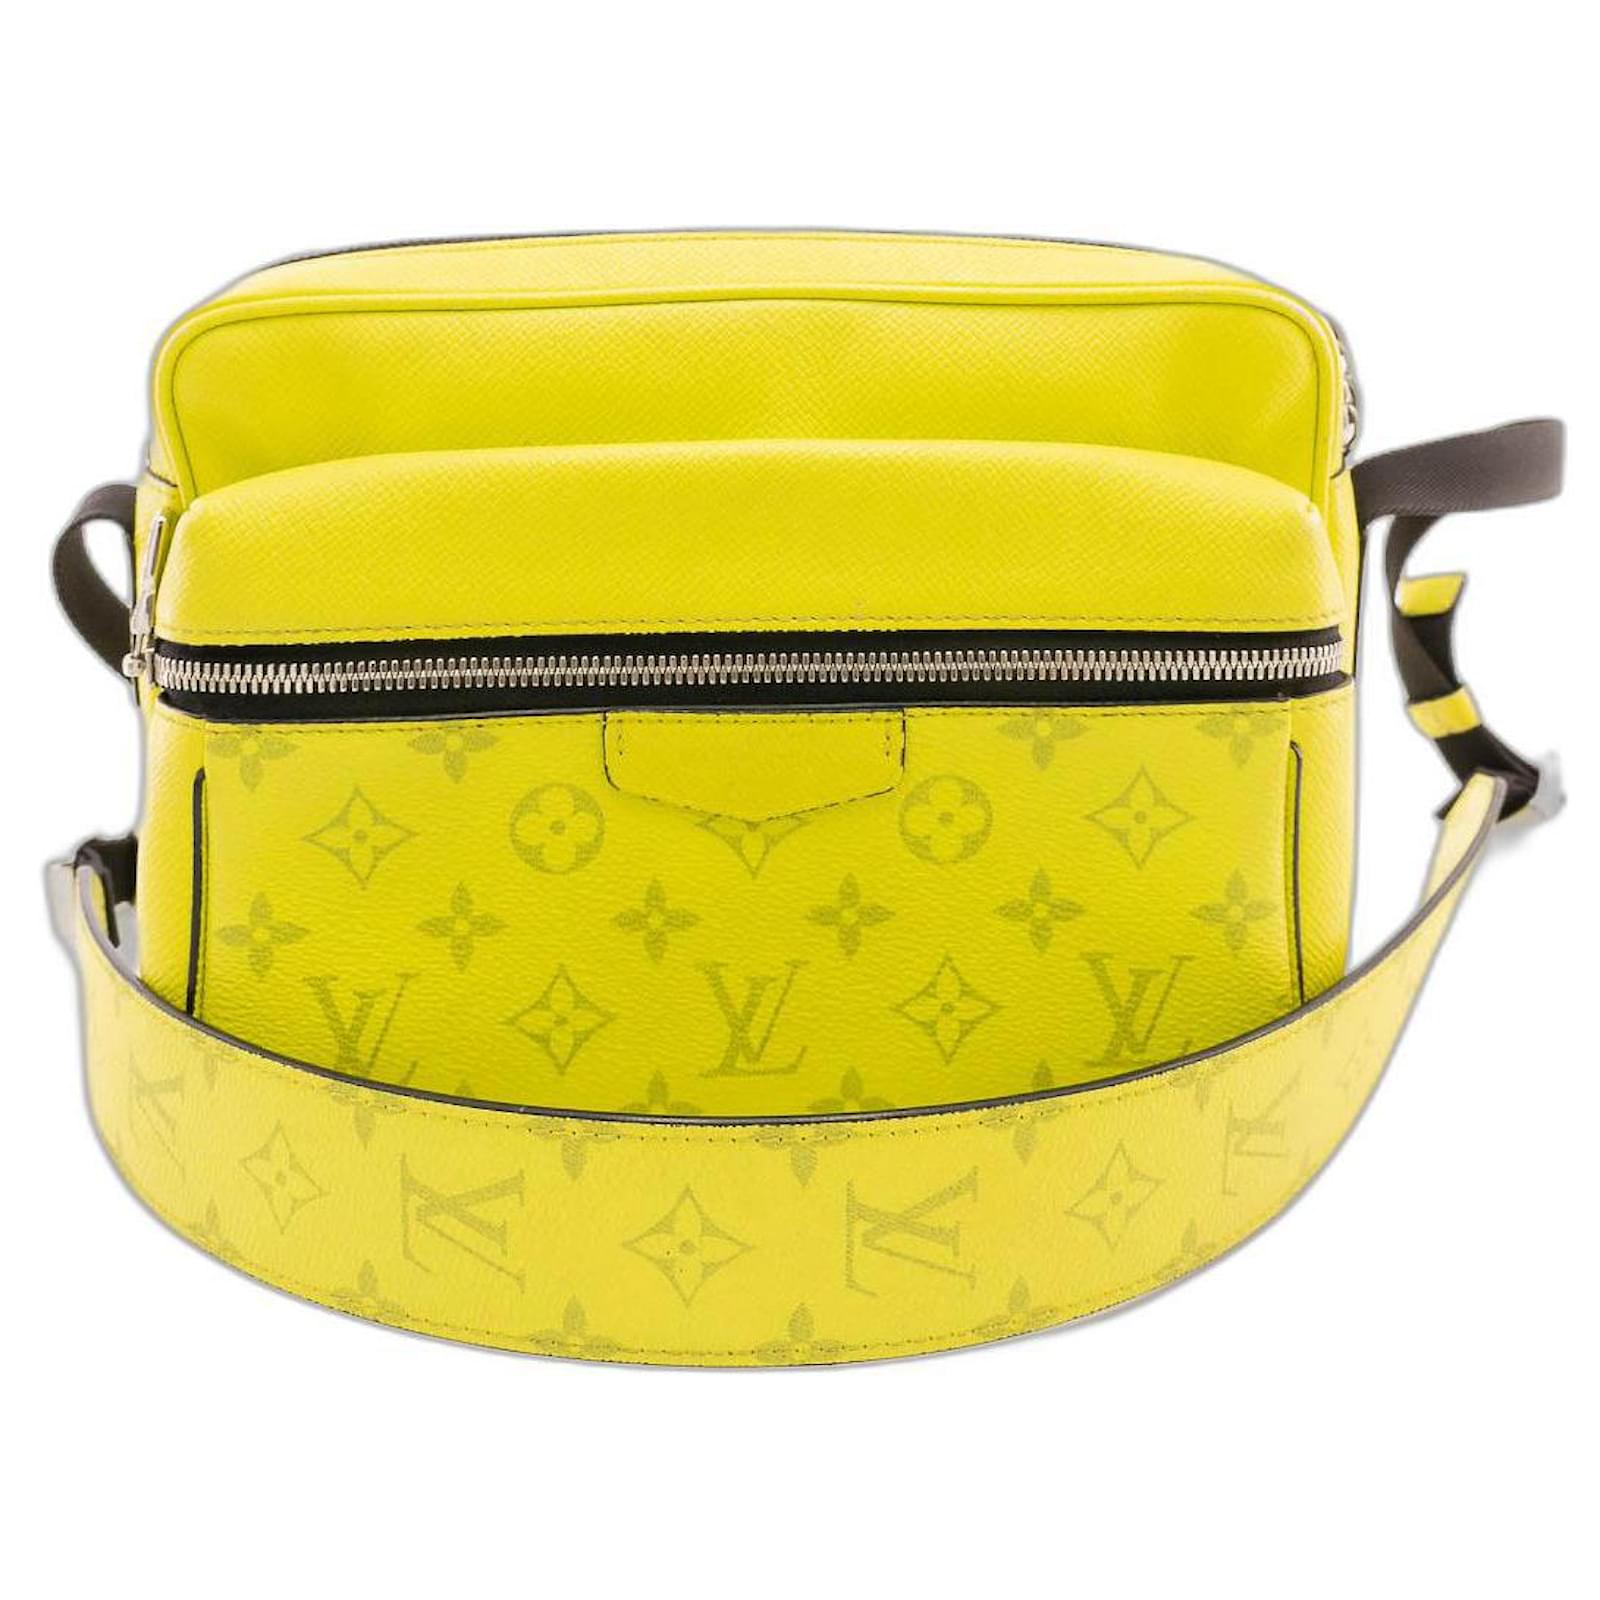 Louis Vuitton Outdoor Bumbag Monogram Bahia Taiga Yellow in Taiga